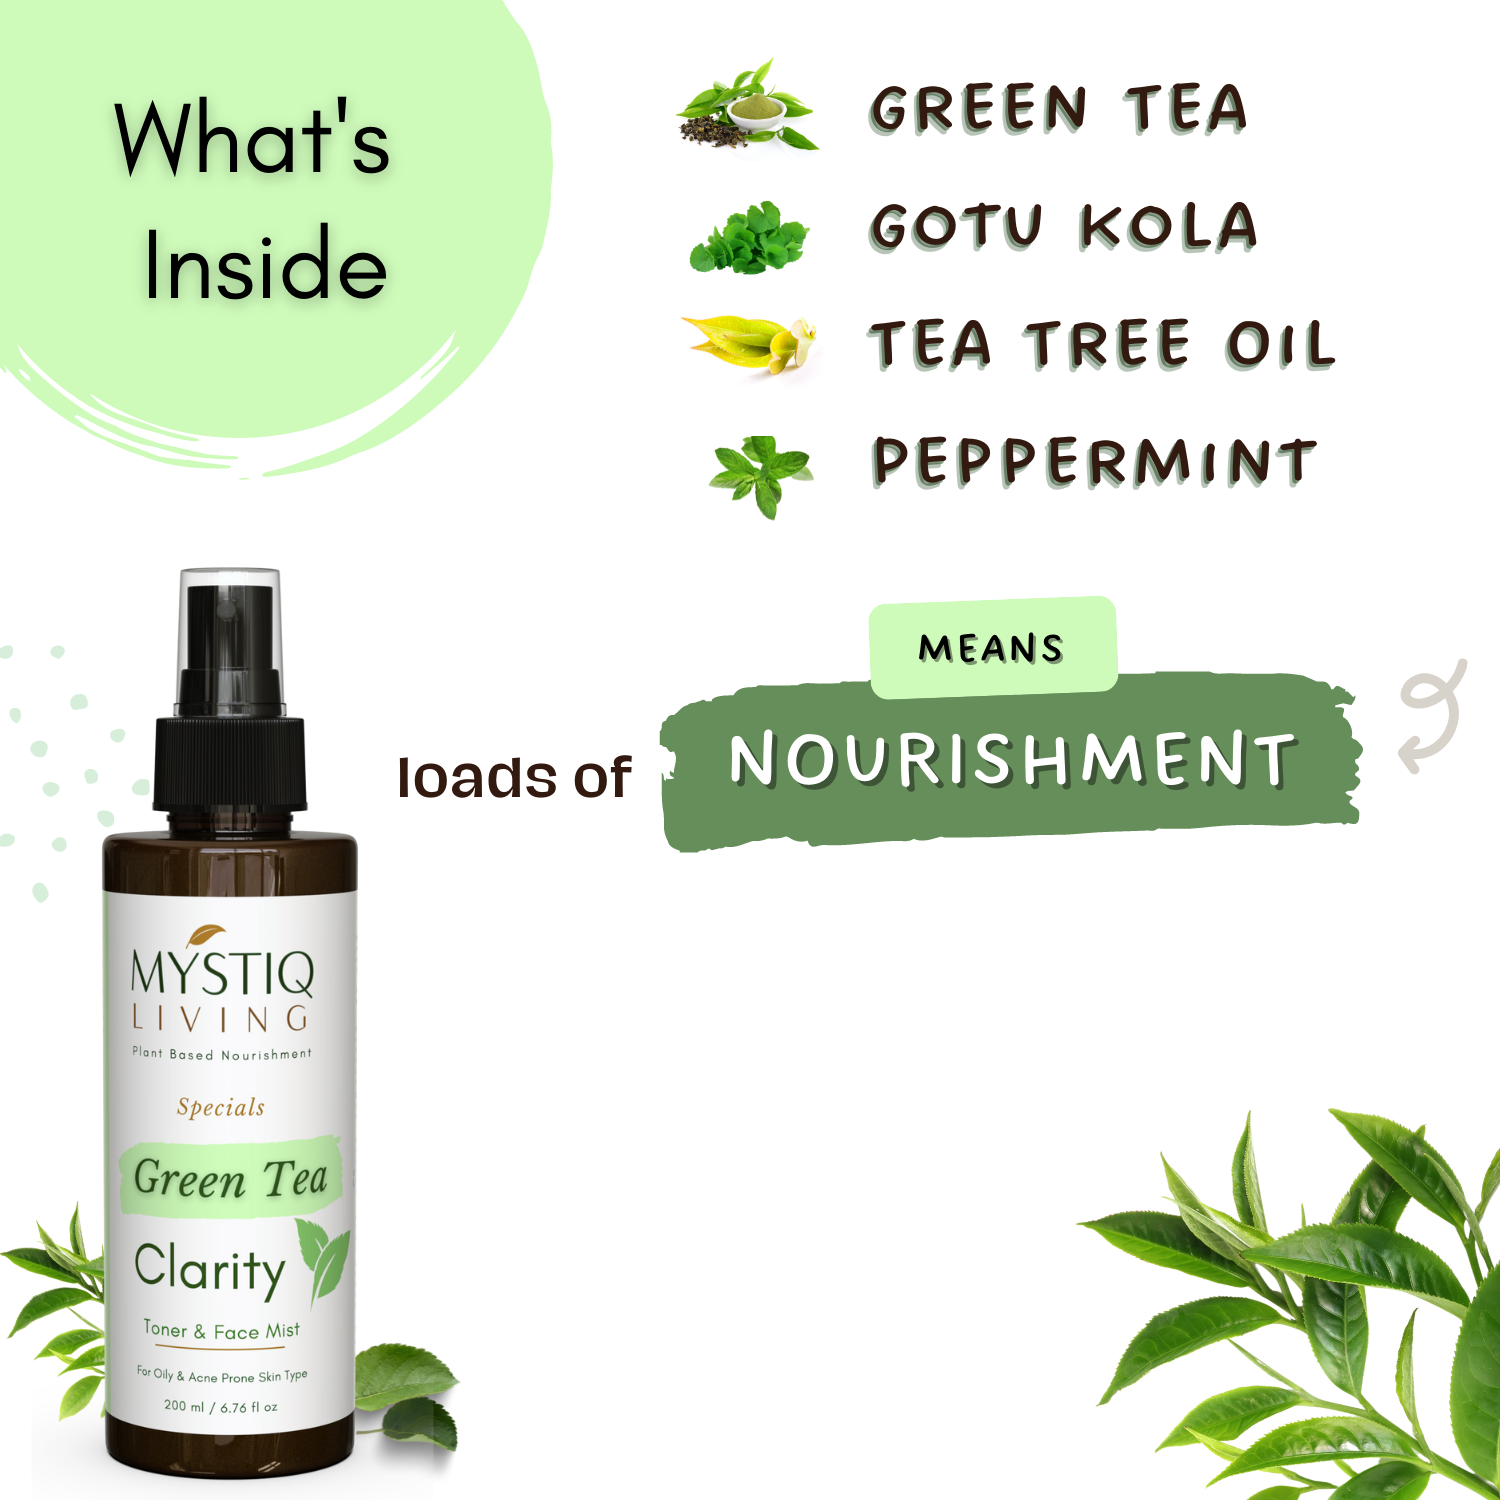 Green Tea Clarity Face Toner & Mist - Mystiq Living